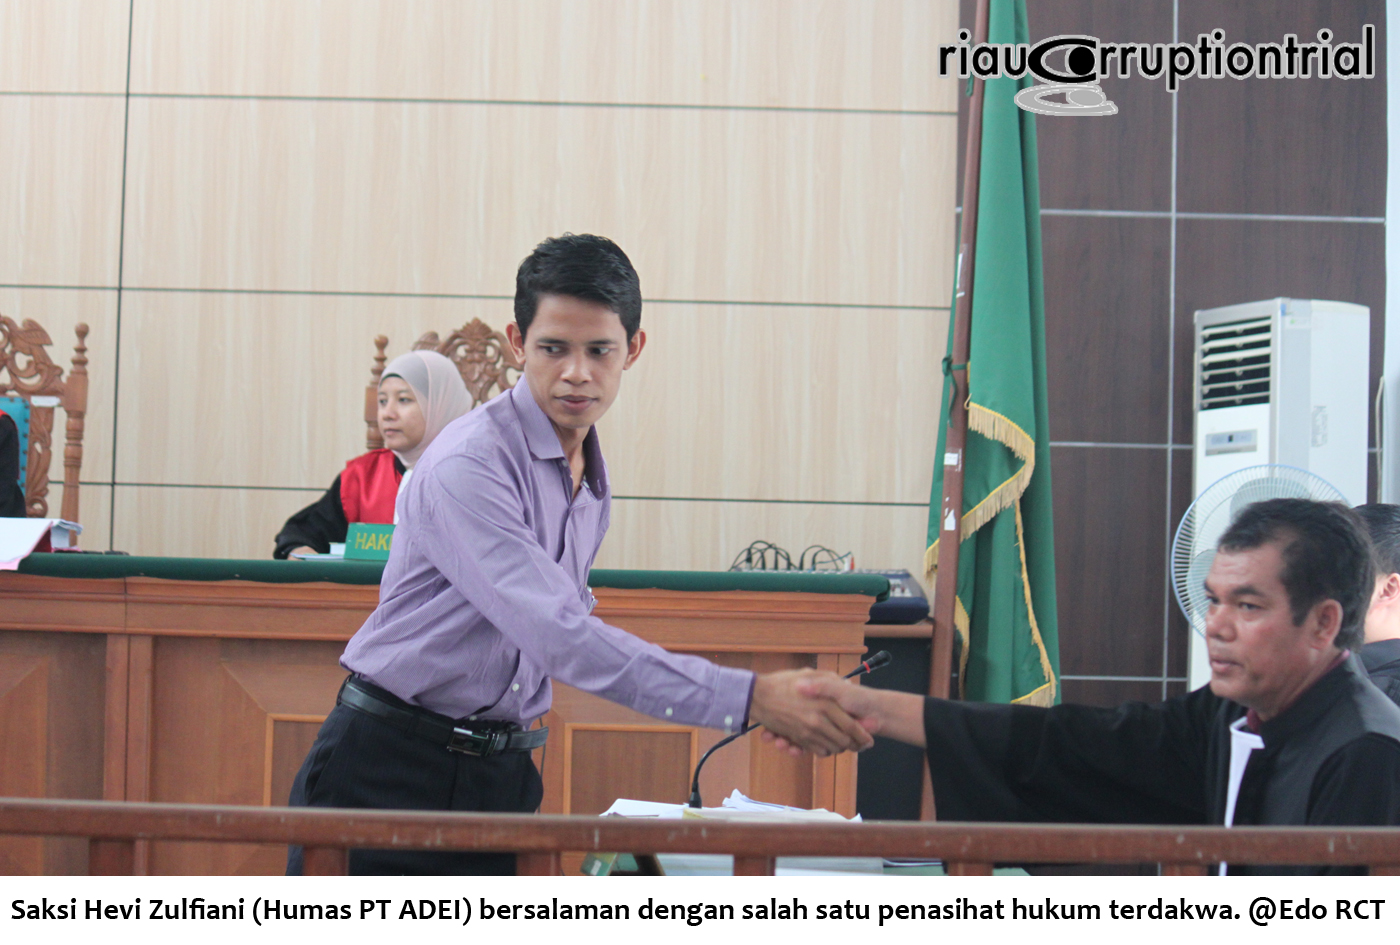 Saksi Hevi Zulfiani Humas PT ADEI bersalam dengan salah satu PH terdakwa